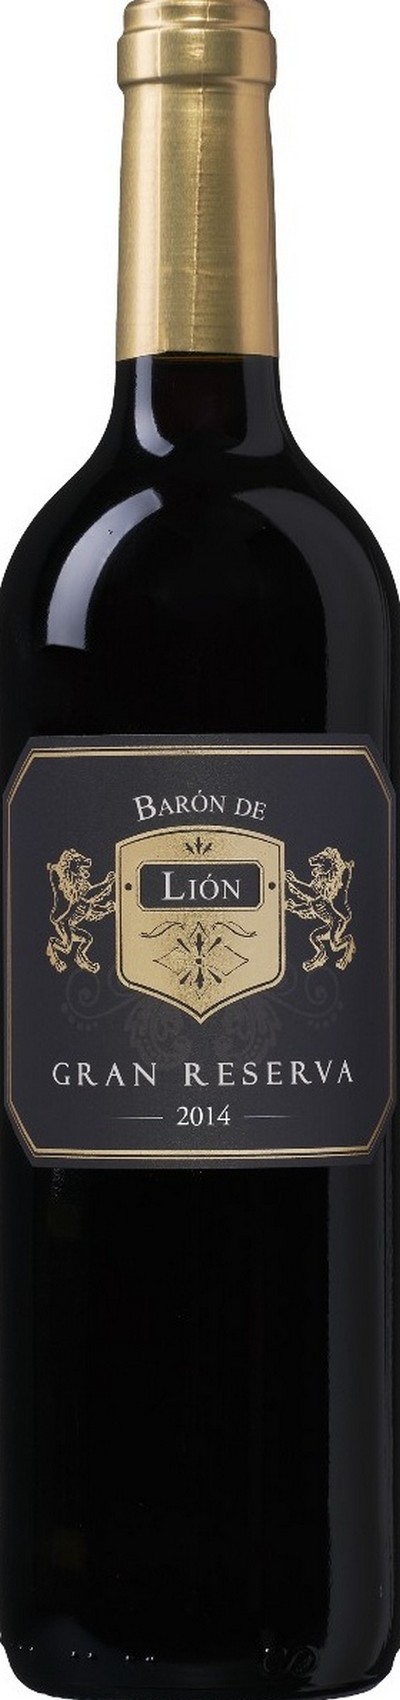 baron-de-lion-utiel-requena-do-gran-reserva-2014